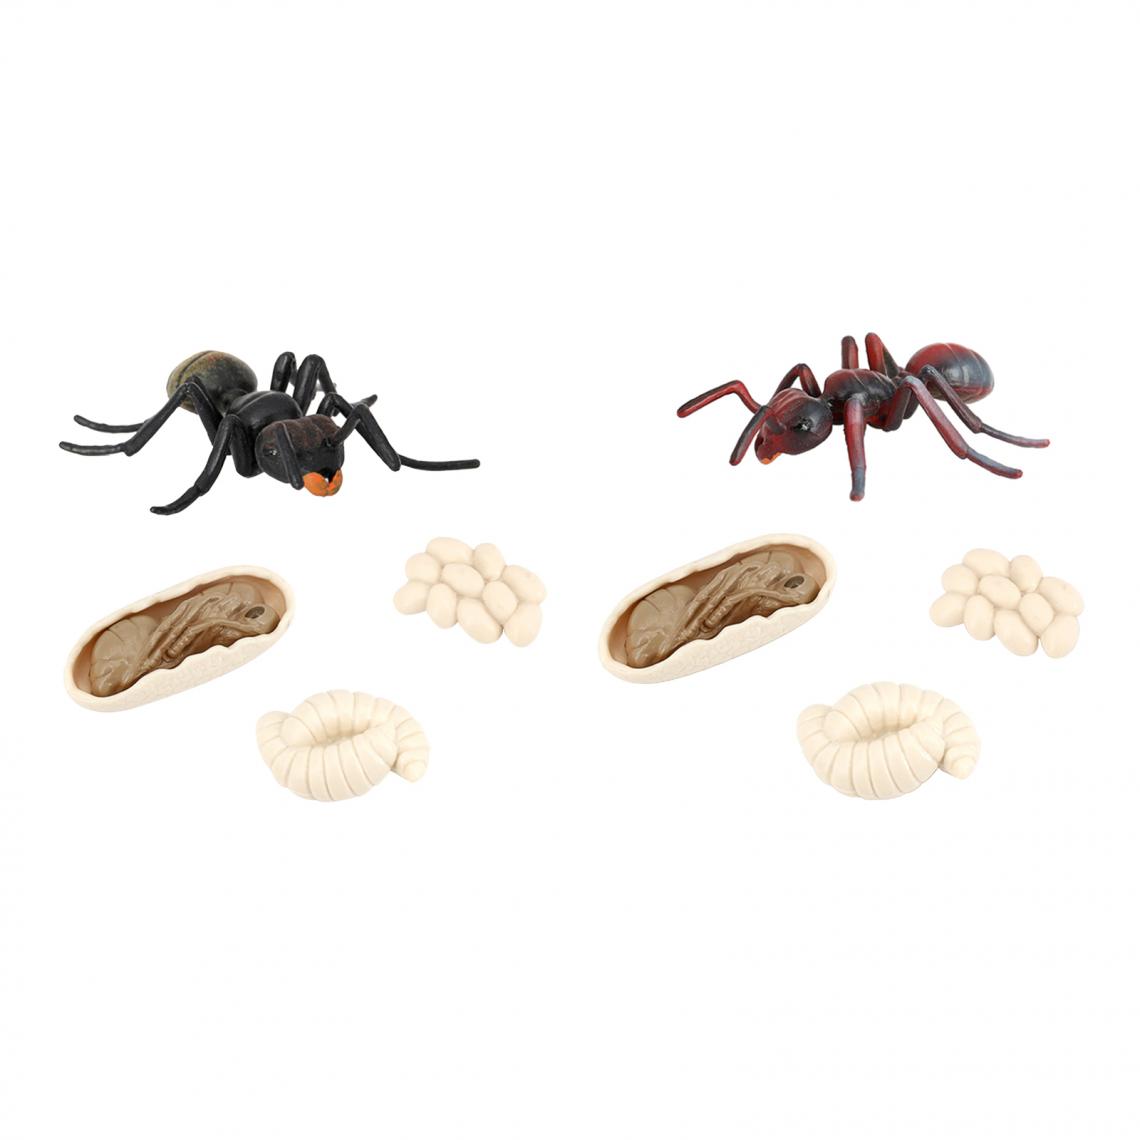 marque generique - 2x Simulation Ant Growth Life Cycle Figures Jouet D'imagination pour Les Enfants - Jeux éducatifs